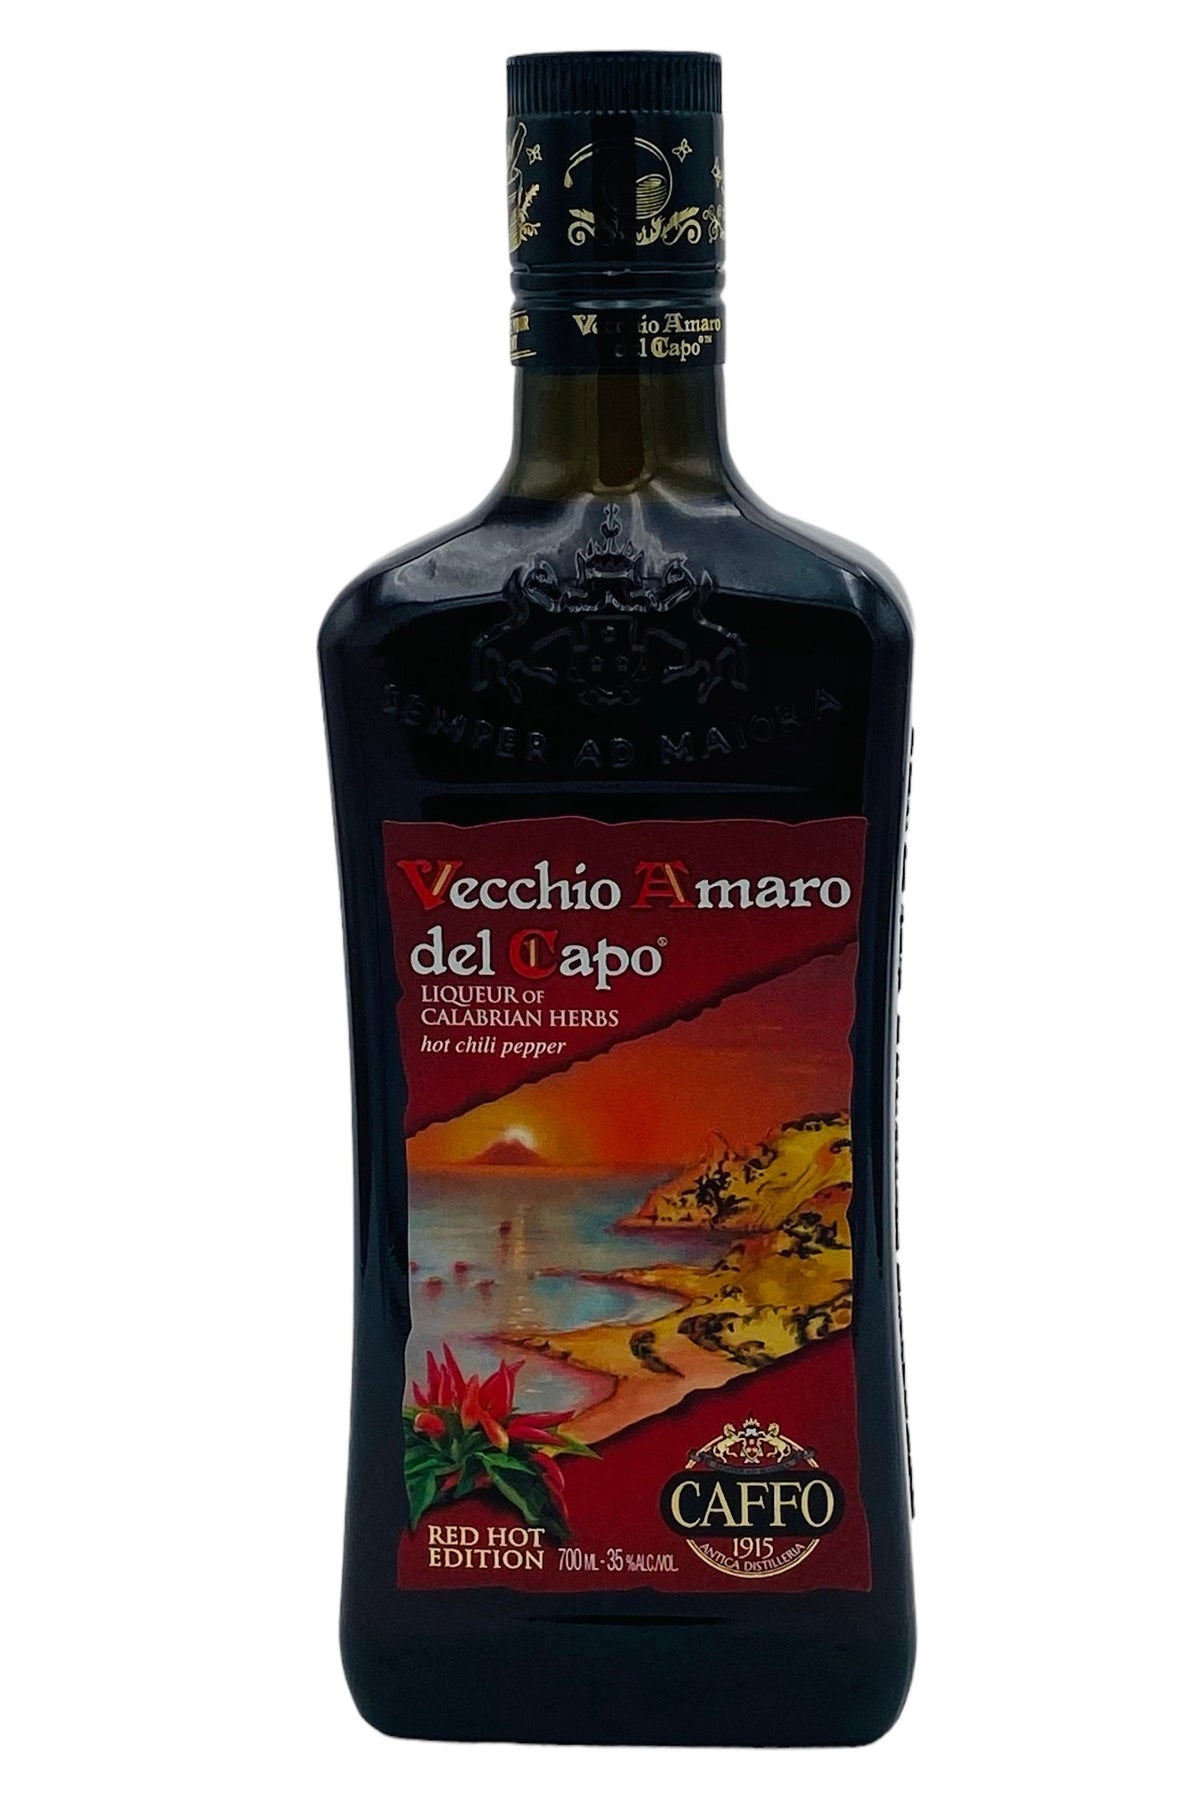 Caffo Vecchio Amaro Del Capo Red Hot Chili Pepper Edition Amaro Liqueur